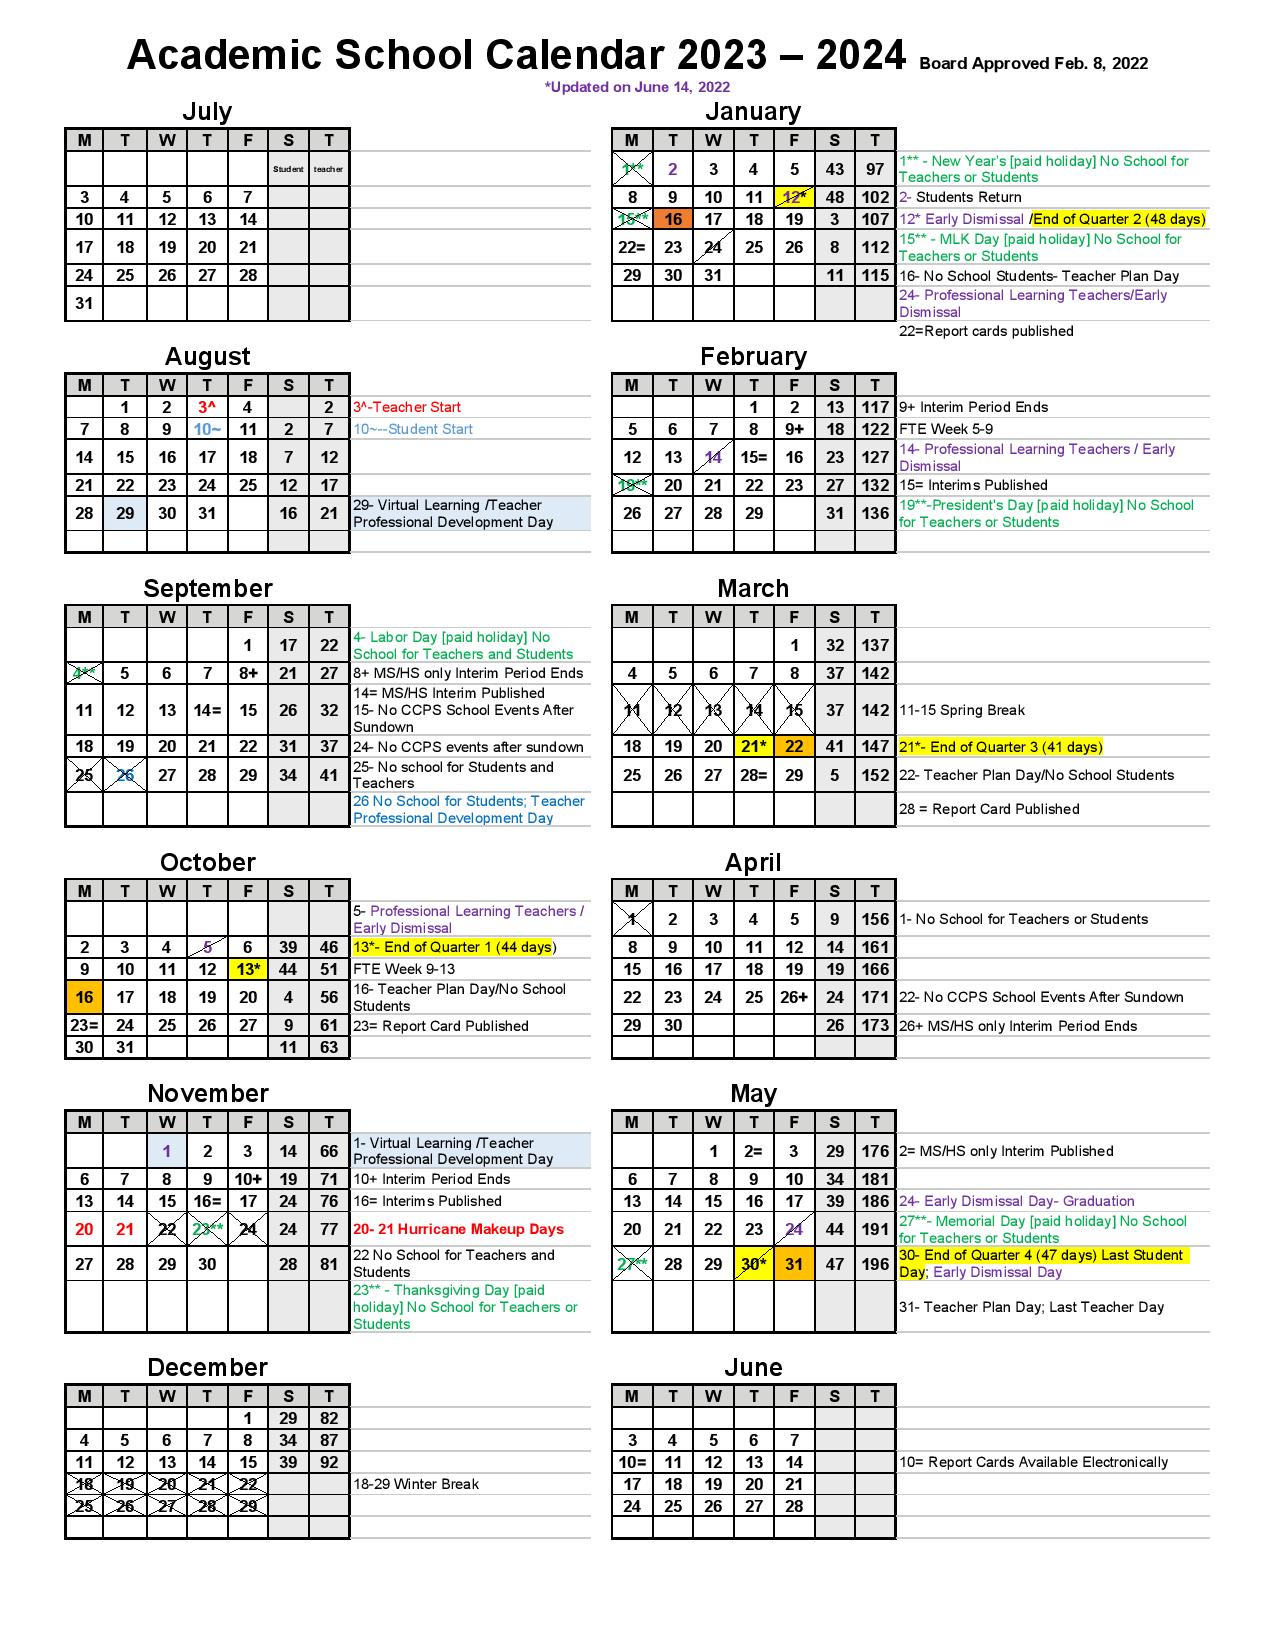 Collier County Public Schools Calendar 2023-2024